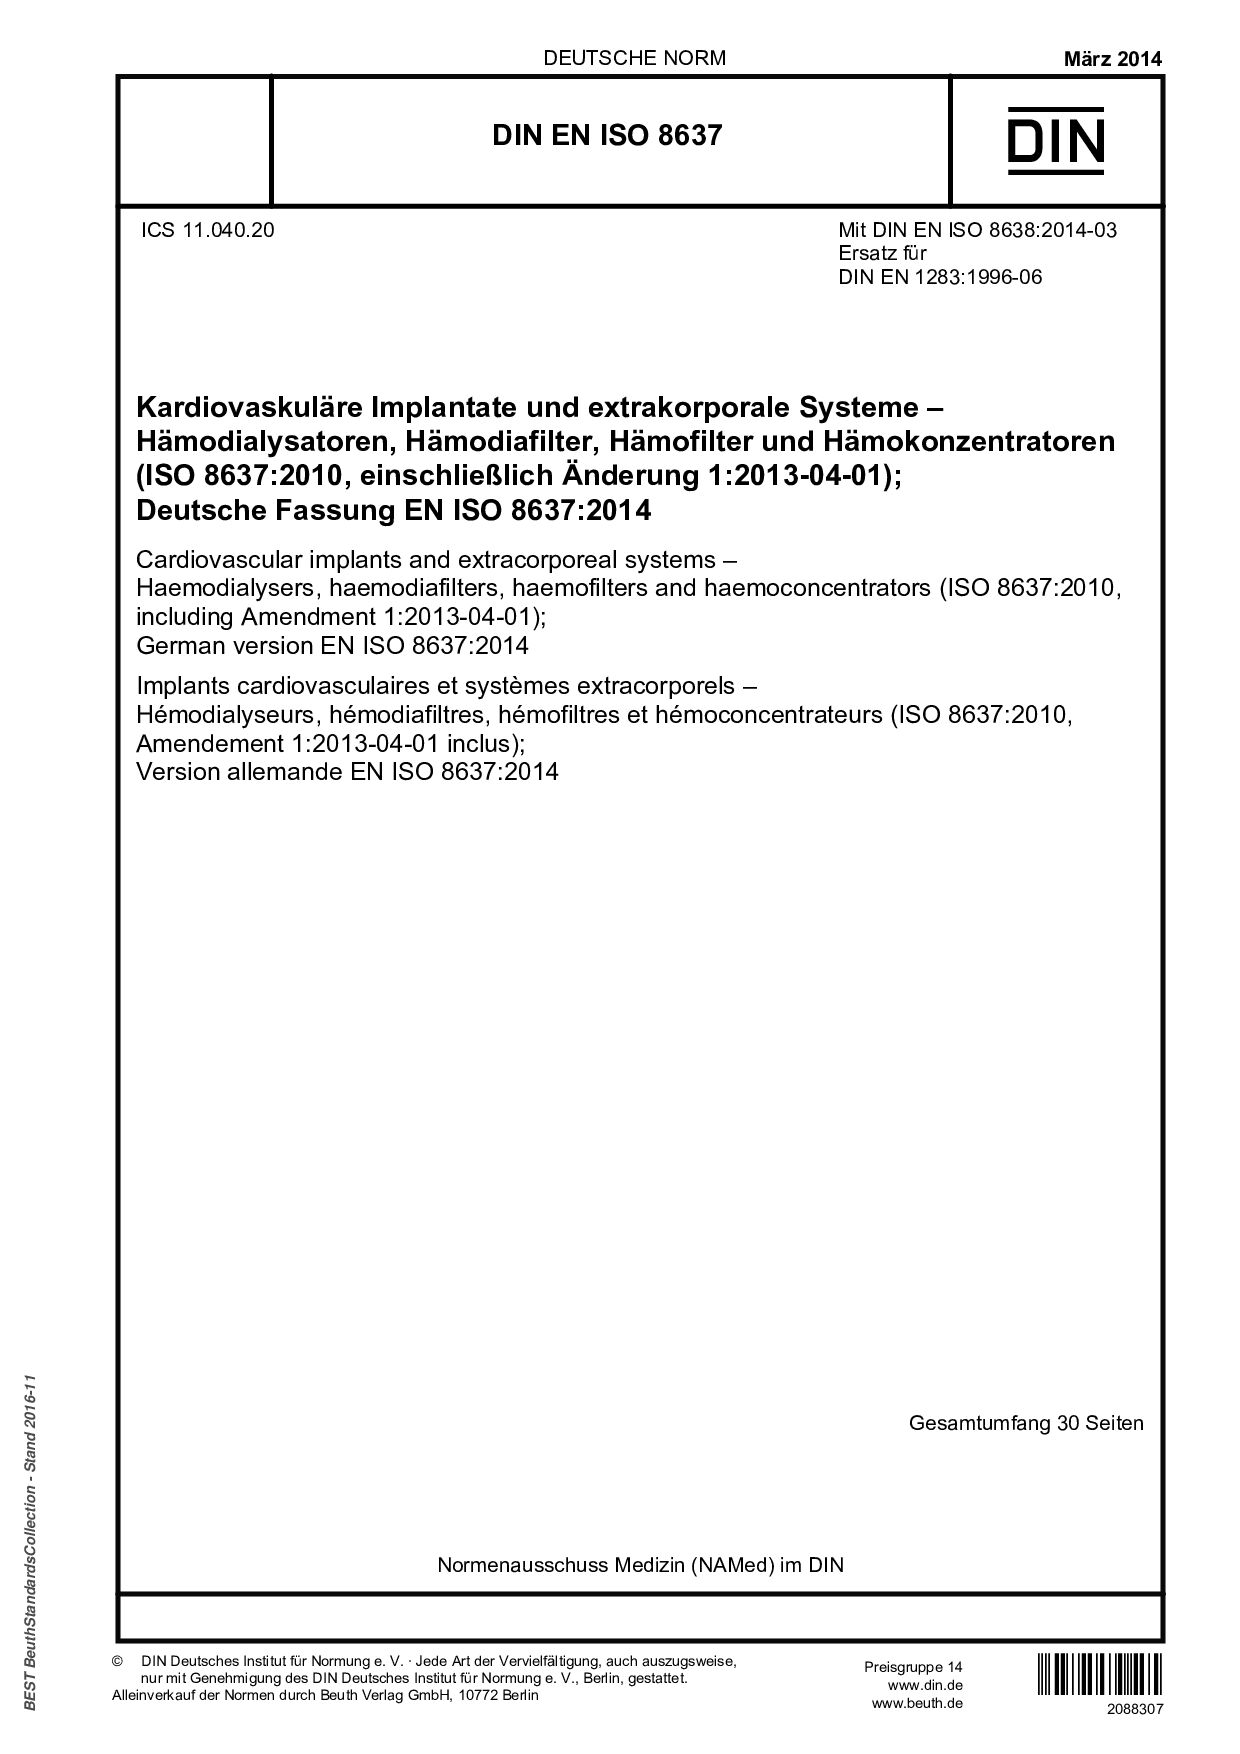 DIN EN ISO 8637:2014封面图